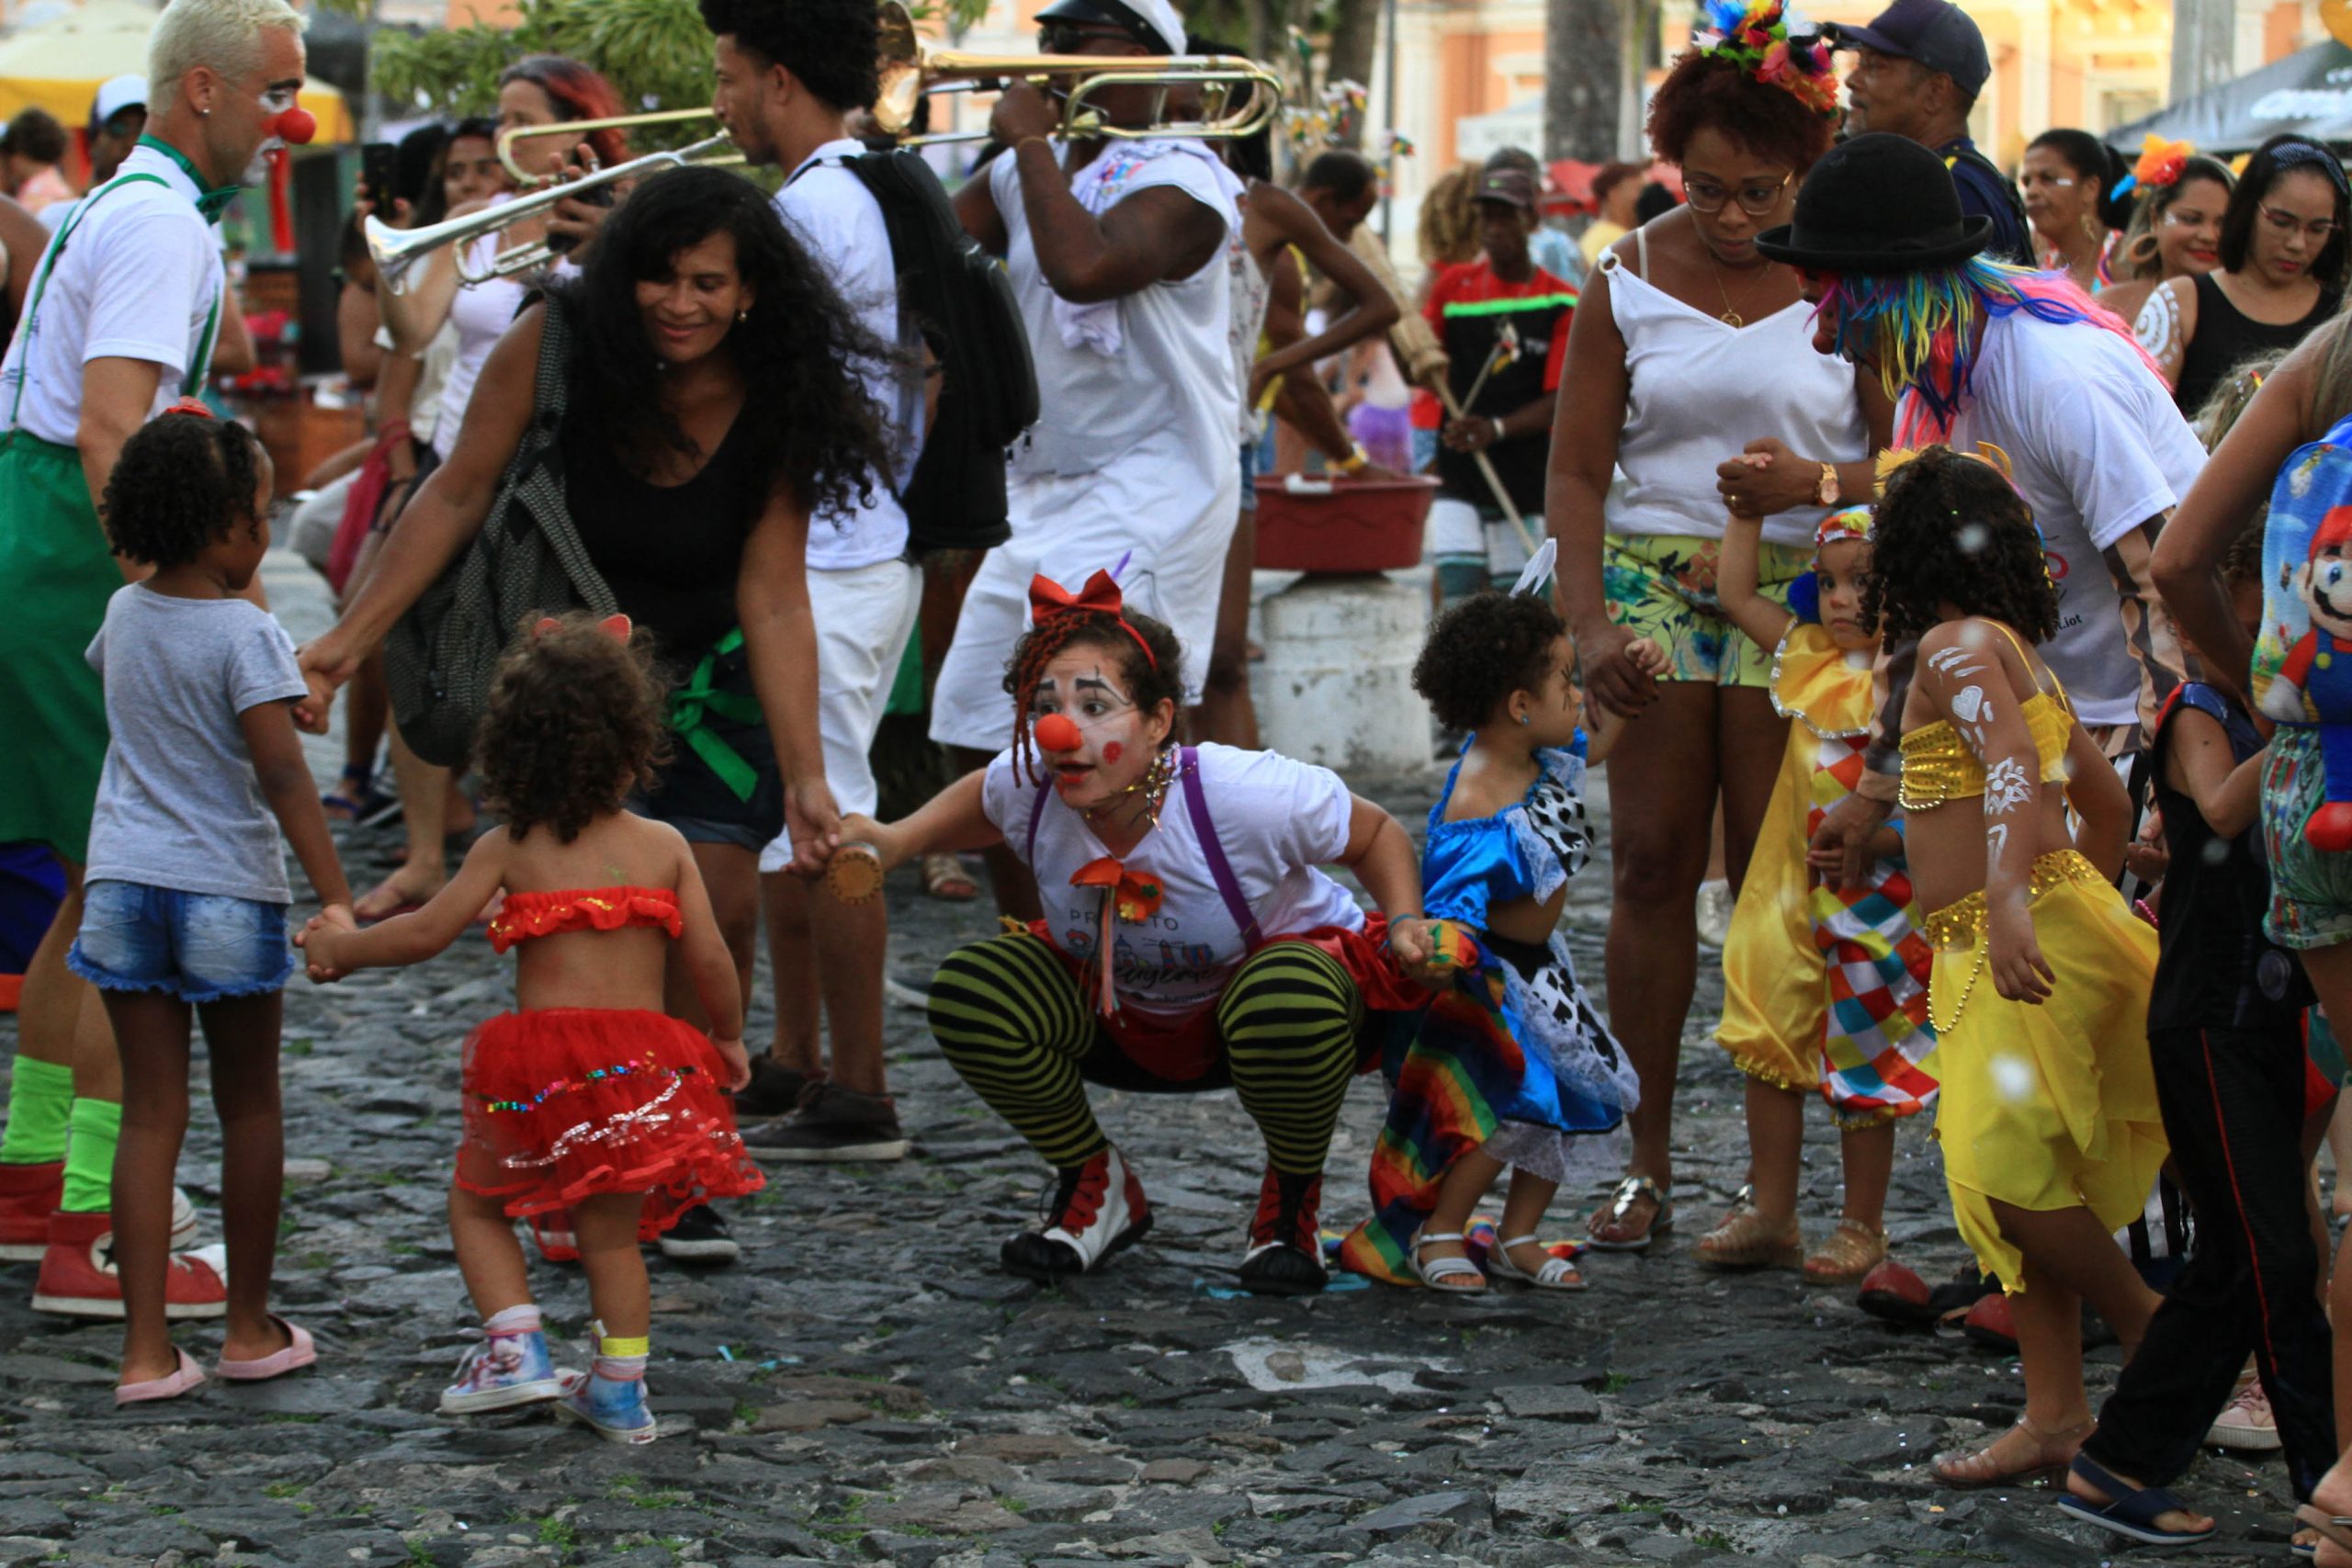 Clima familiar toma conta do Circuito Batatinha no segundo dia de Carnaval